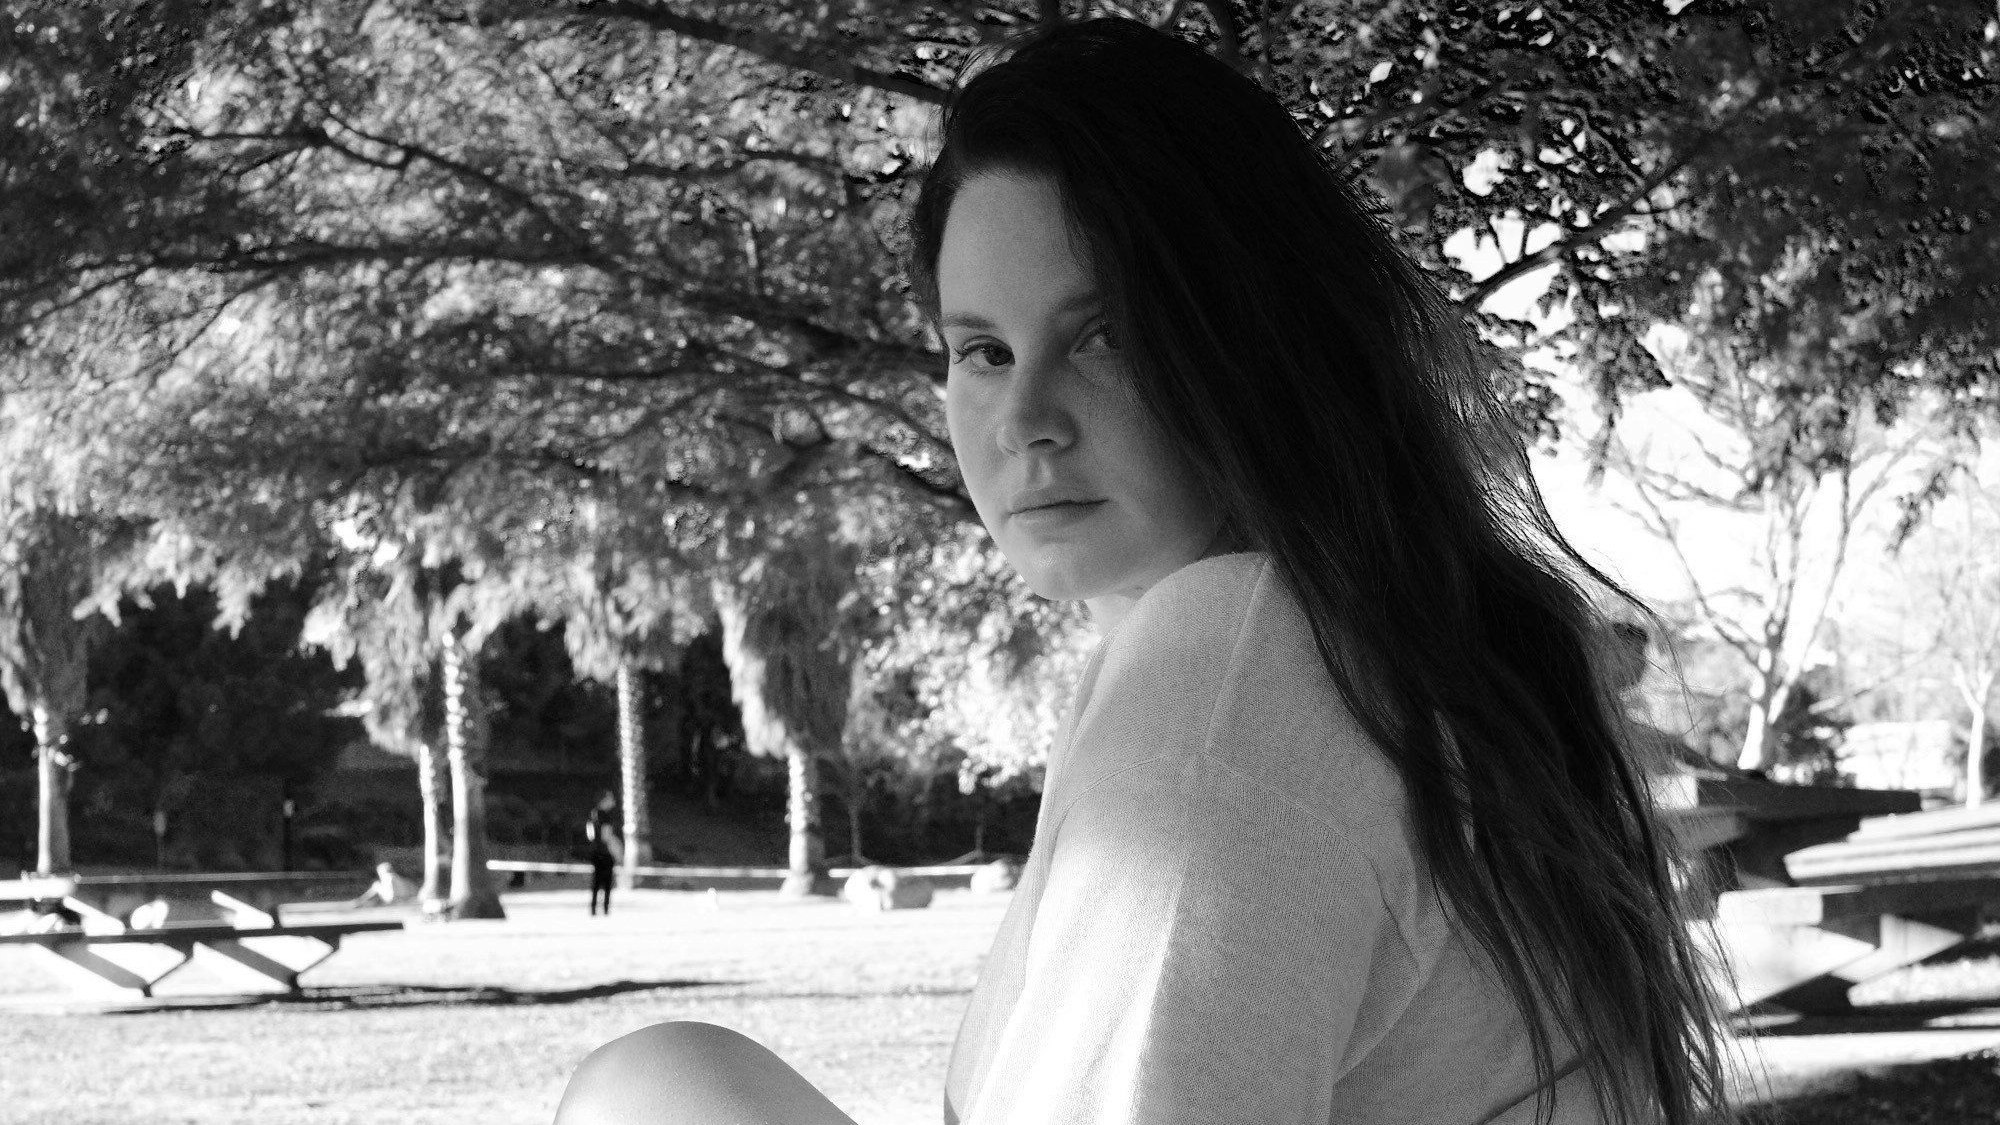 Lana Del Rey sitzt in einem Park unter einem Baum und schaut in die Kamera. Das Bild ist schwarz-weiß.